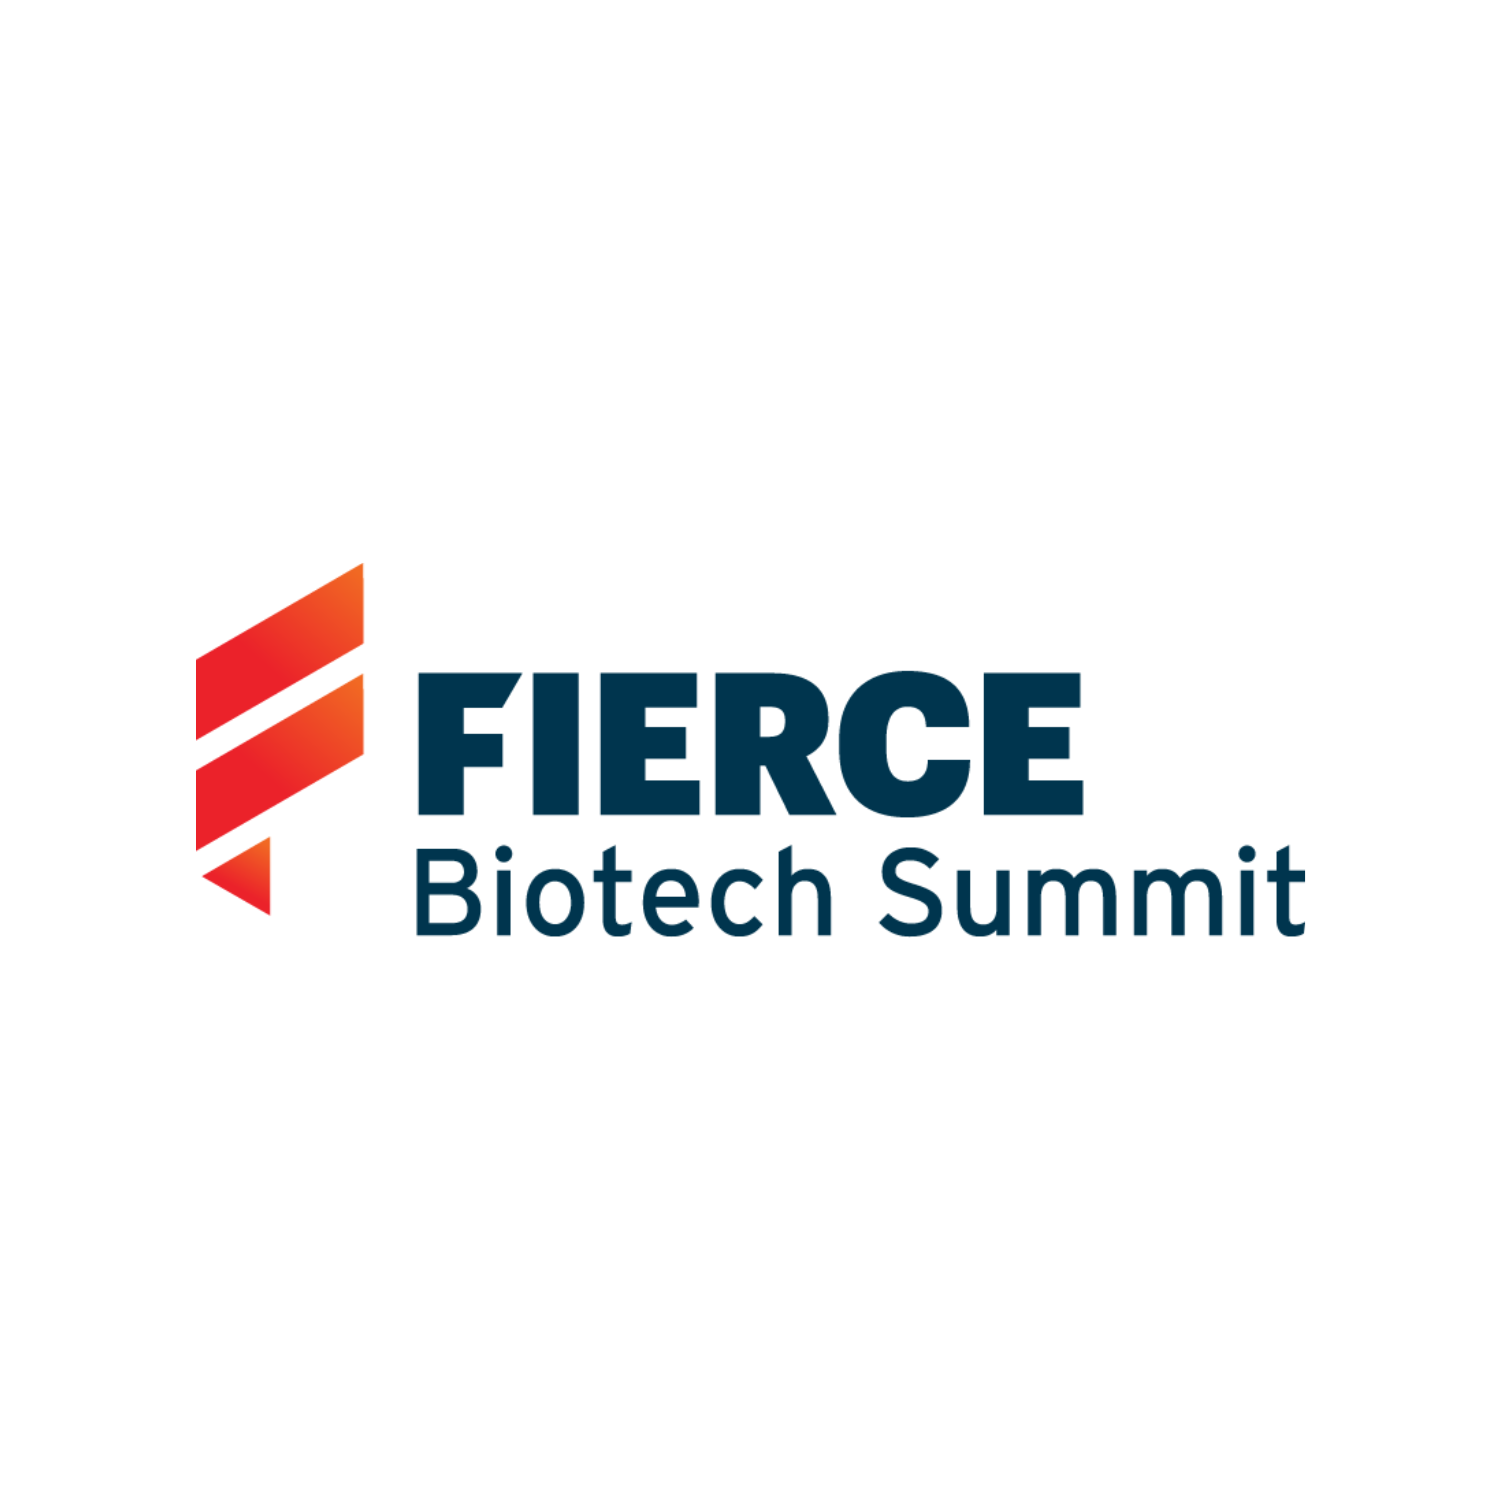 Fierce Biotech Summit | Fierce Biotech